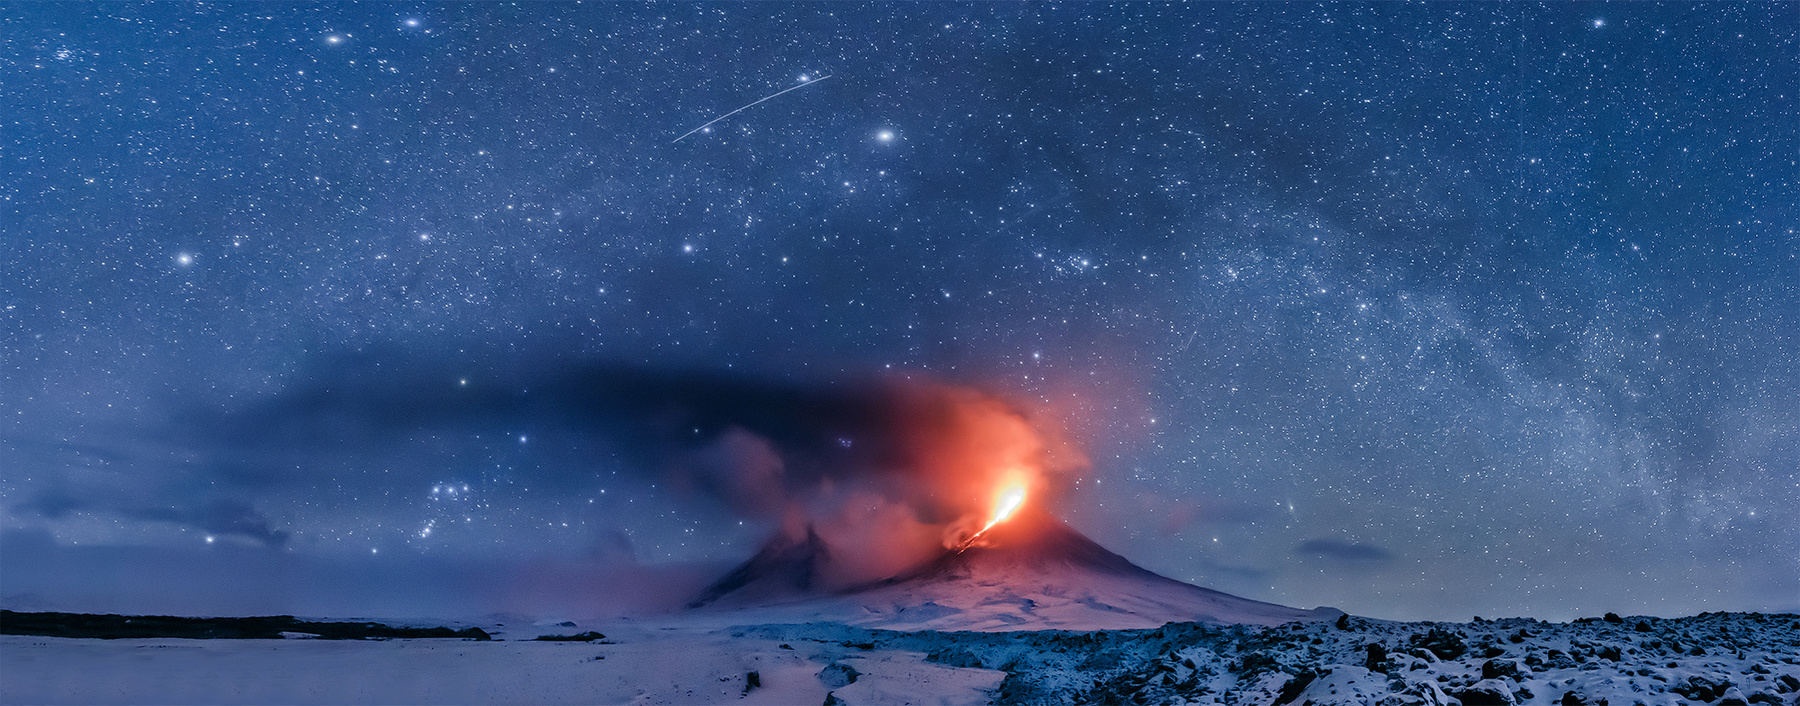 Хвост Дракона Камчатка вулкан извержение природа путешествие фототур пейзаж ночь звезды лава млечный путь